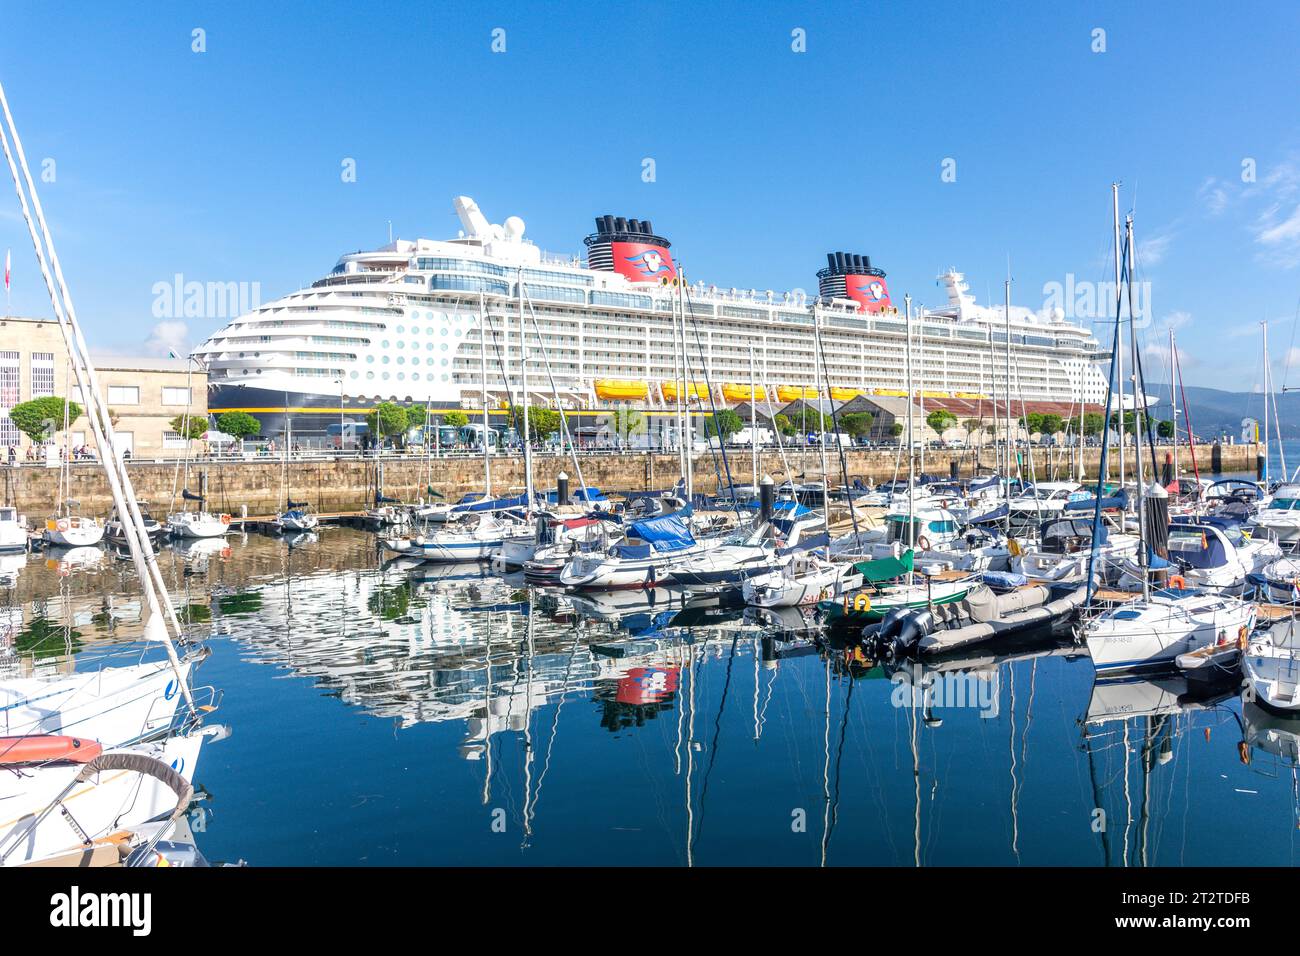 Puerto deportivo de Vigo (marina) et Disney Dream Cruise ship, Puerto de Vigo, Vigo, province de Pontevedra, Galice, Royaume d'Espagne Banque D'Images